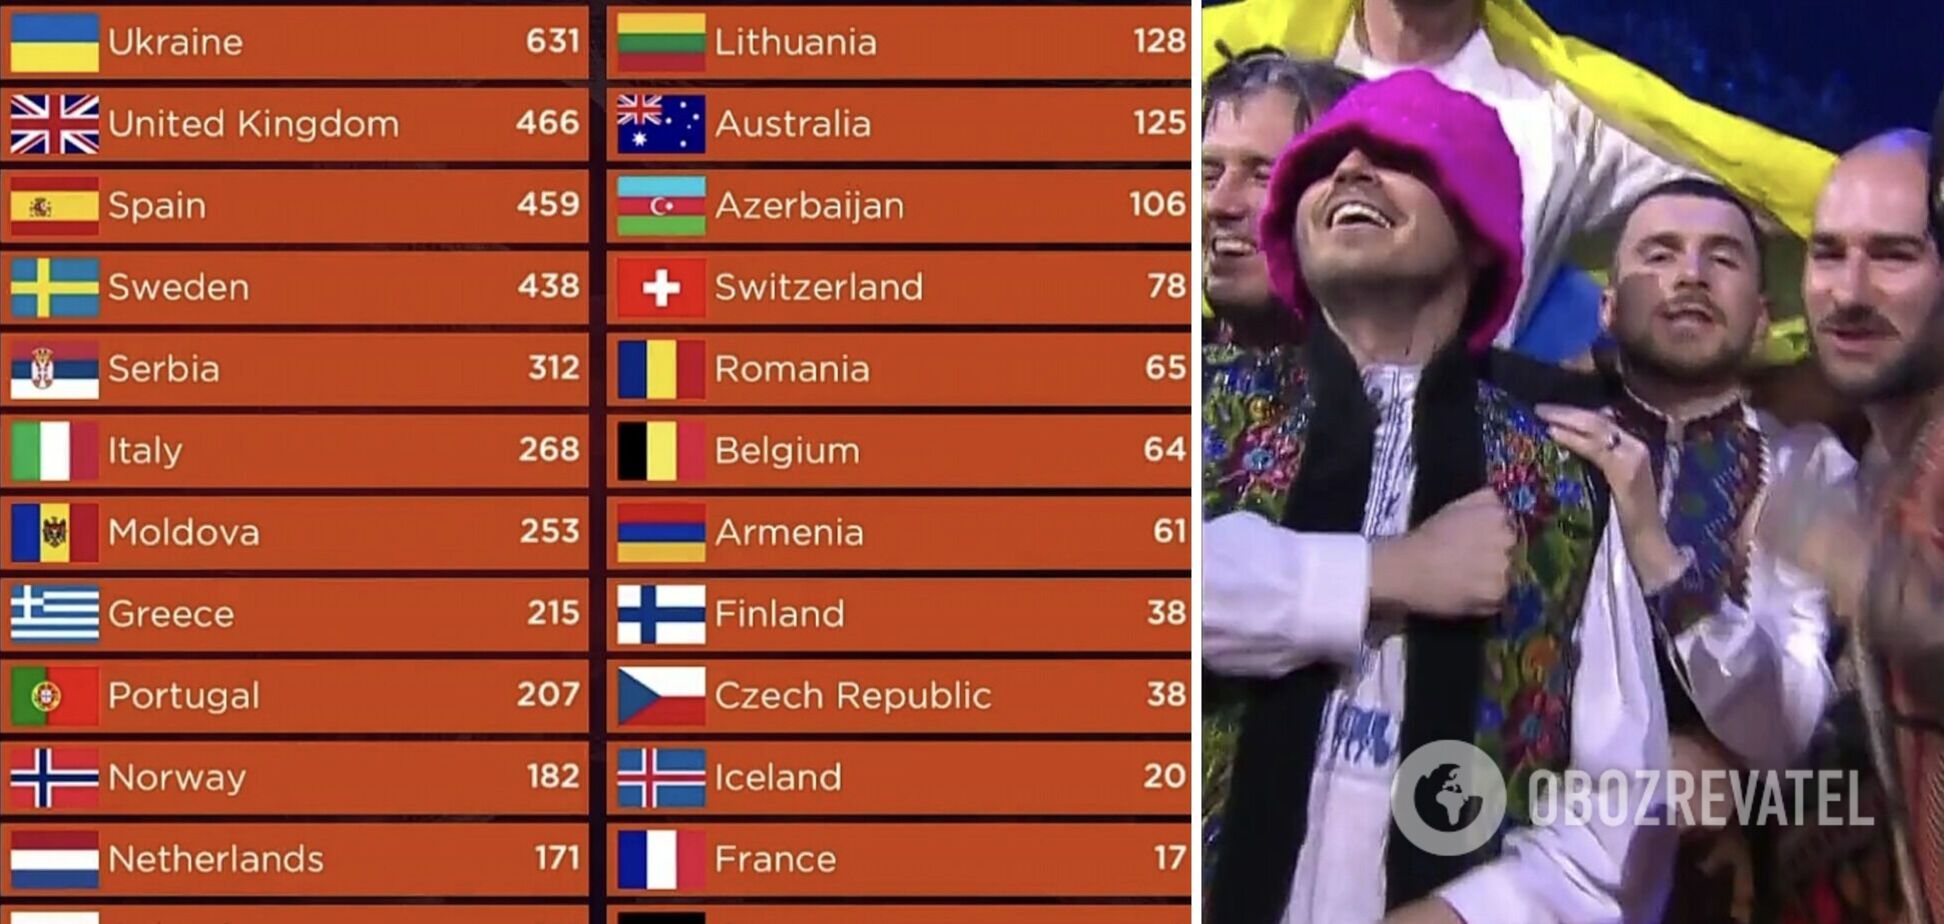 Тричі були переможцями: які місця Україна посідала на Євробаченні протягом 20 років